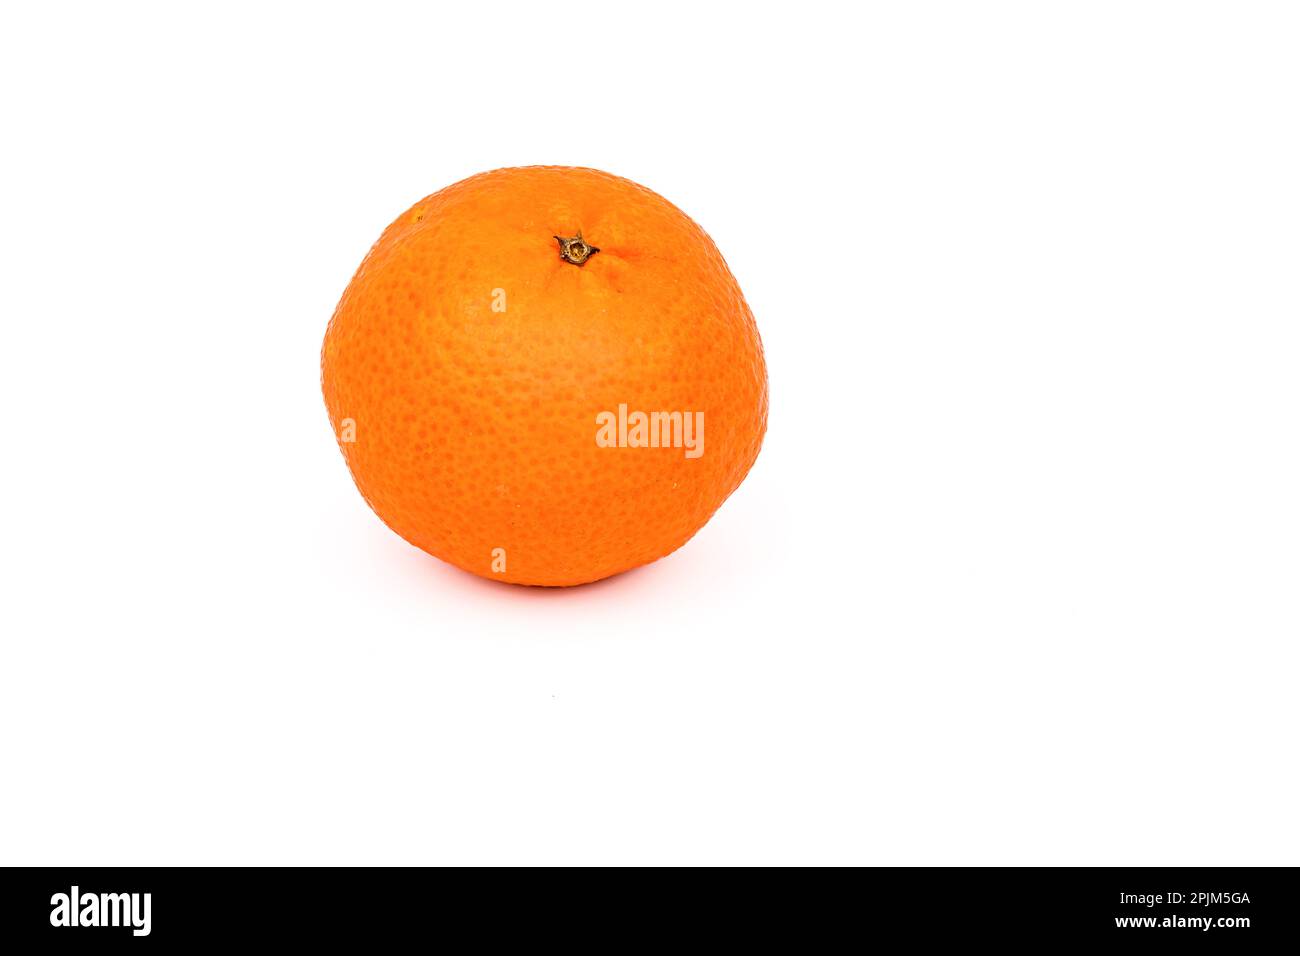 Eine orangefarbene Mandarine als gesundes Essen gekürzt vor weißem Hintergrund als Studioaufnahme Stockfoto